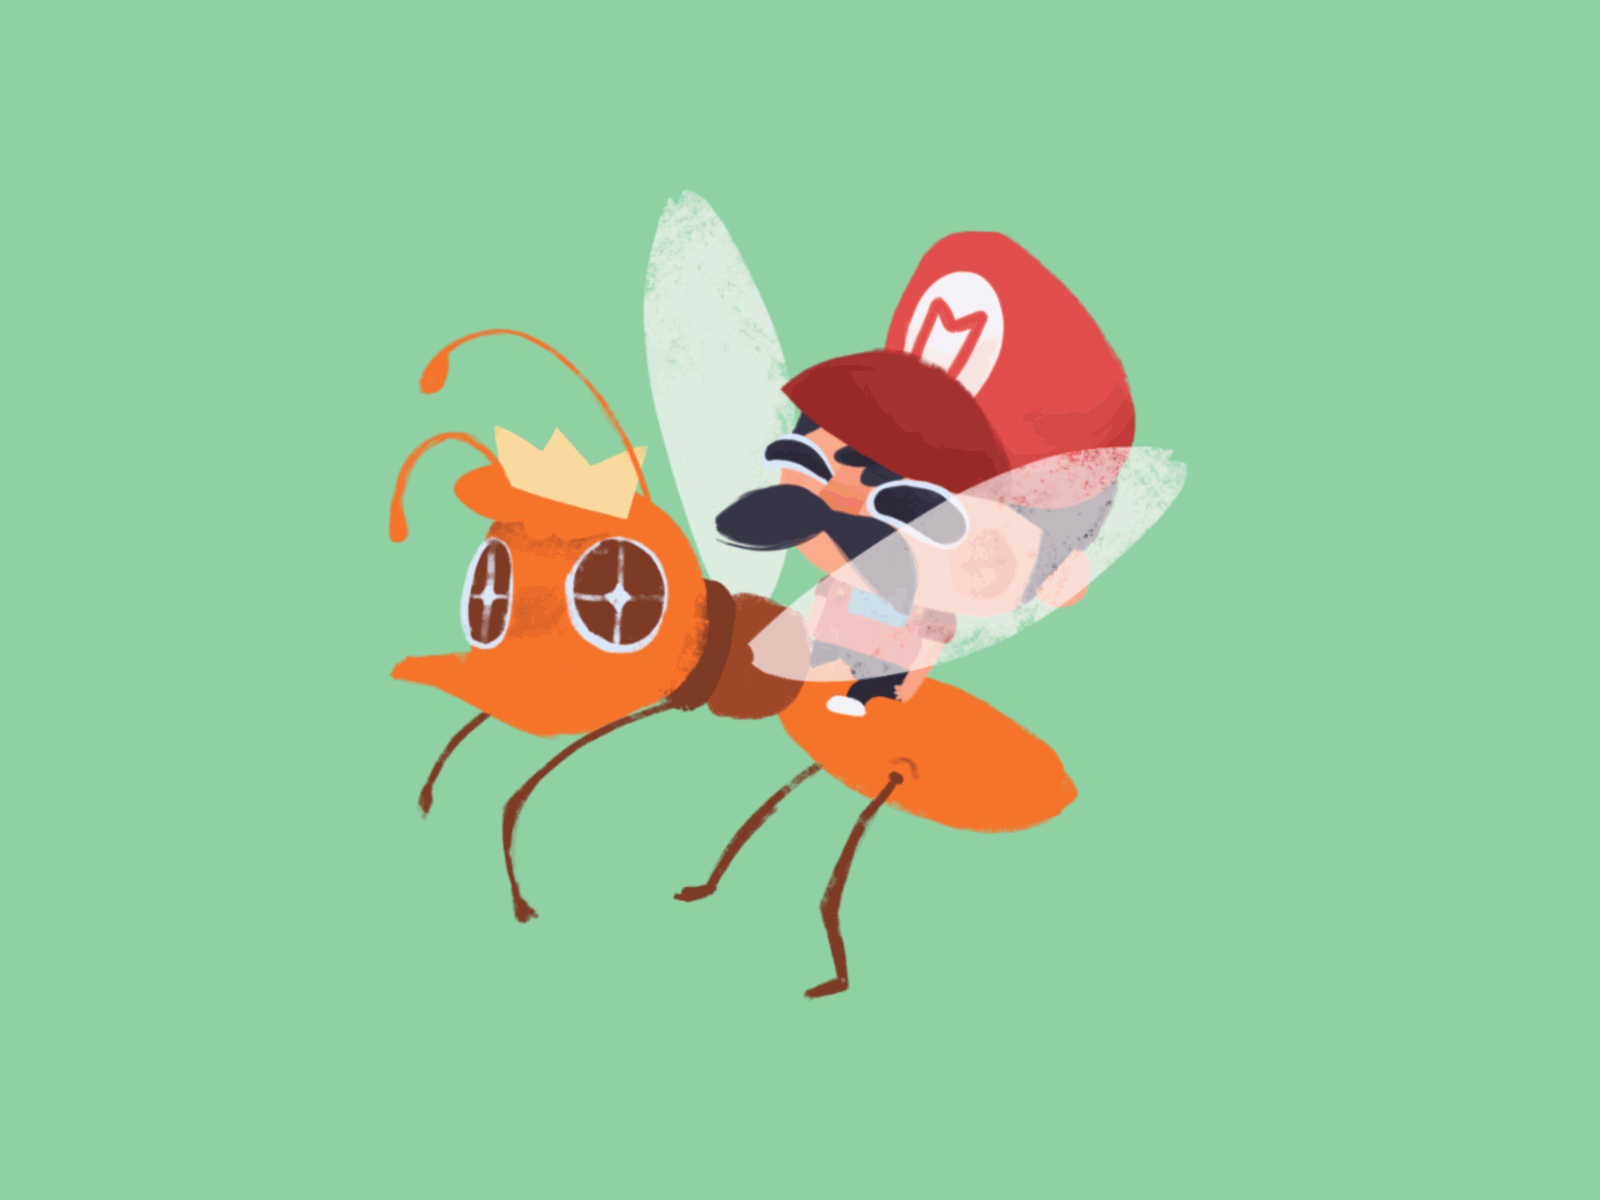 Micro-Mario